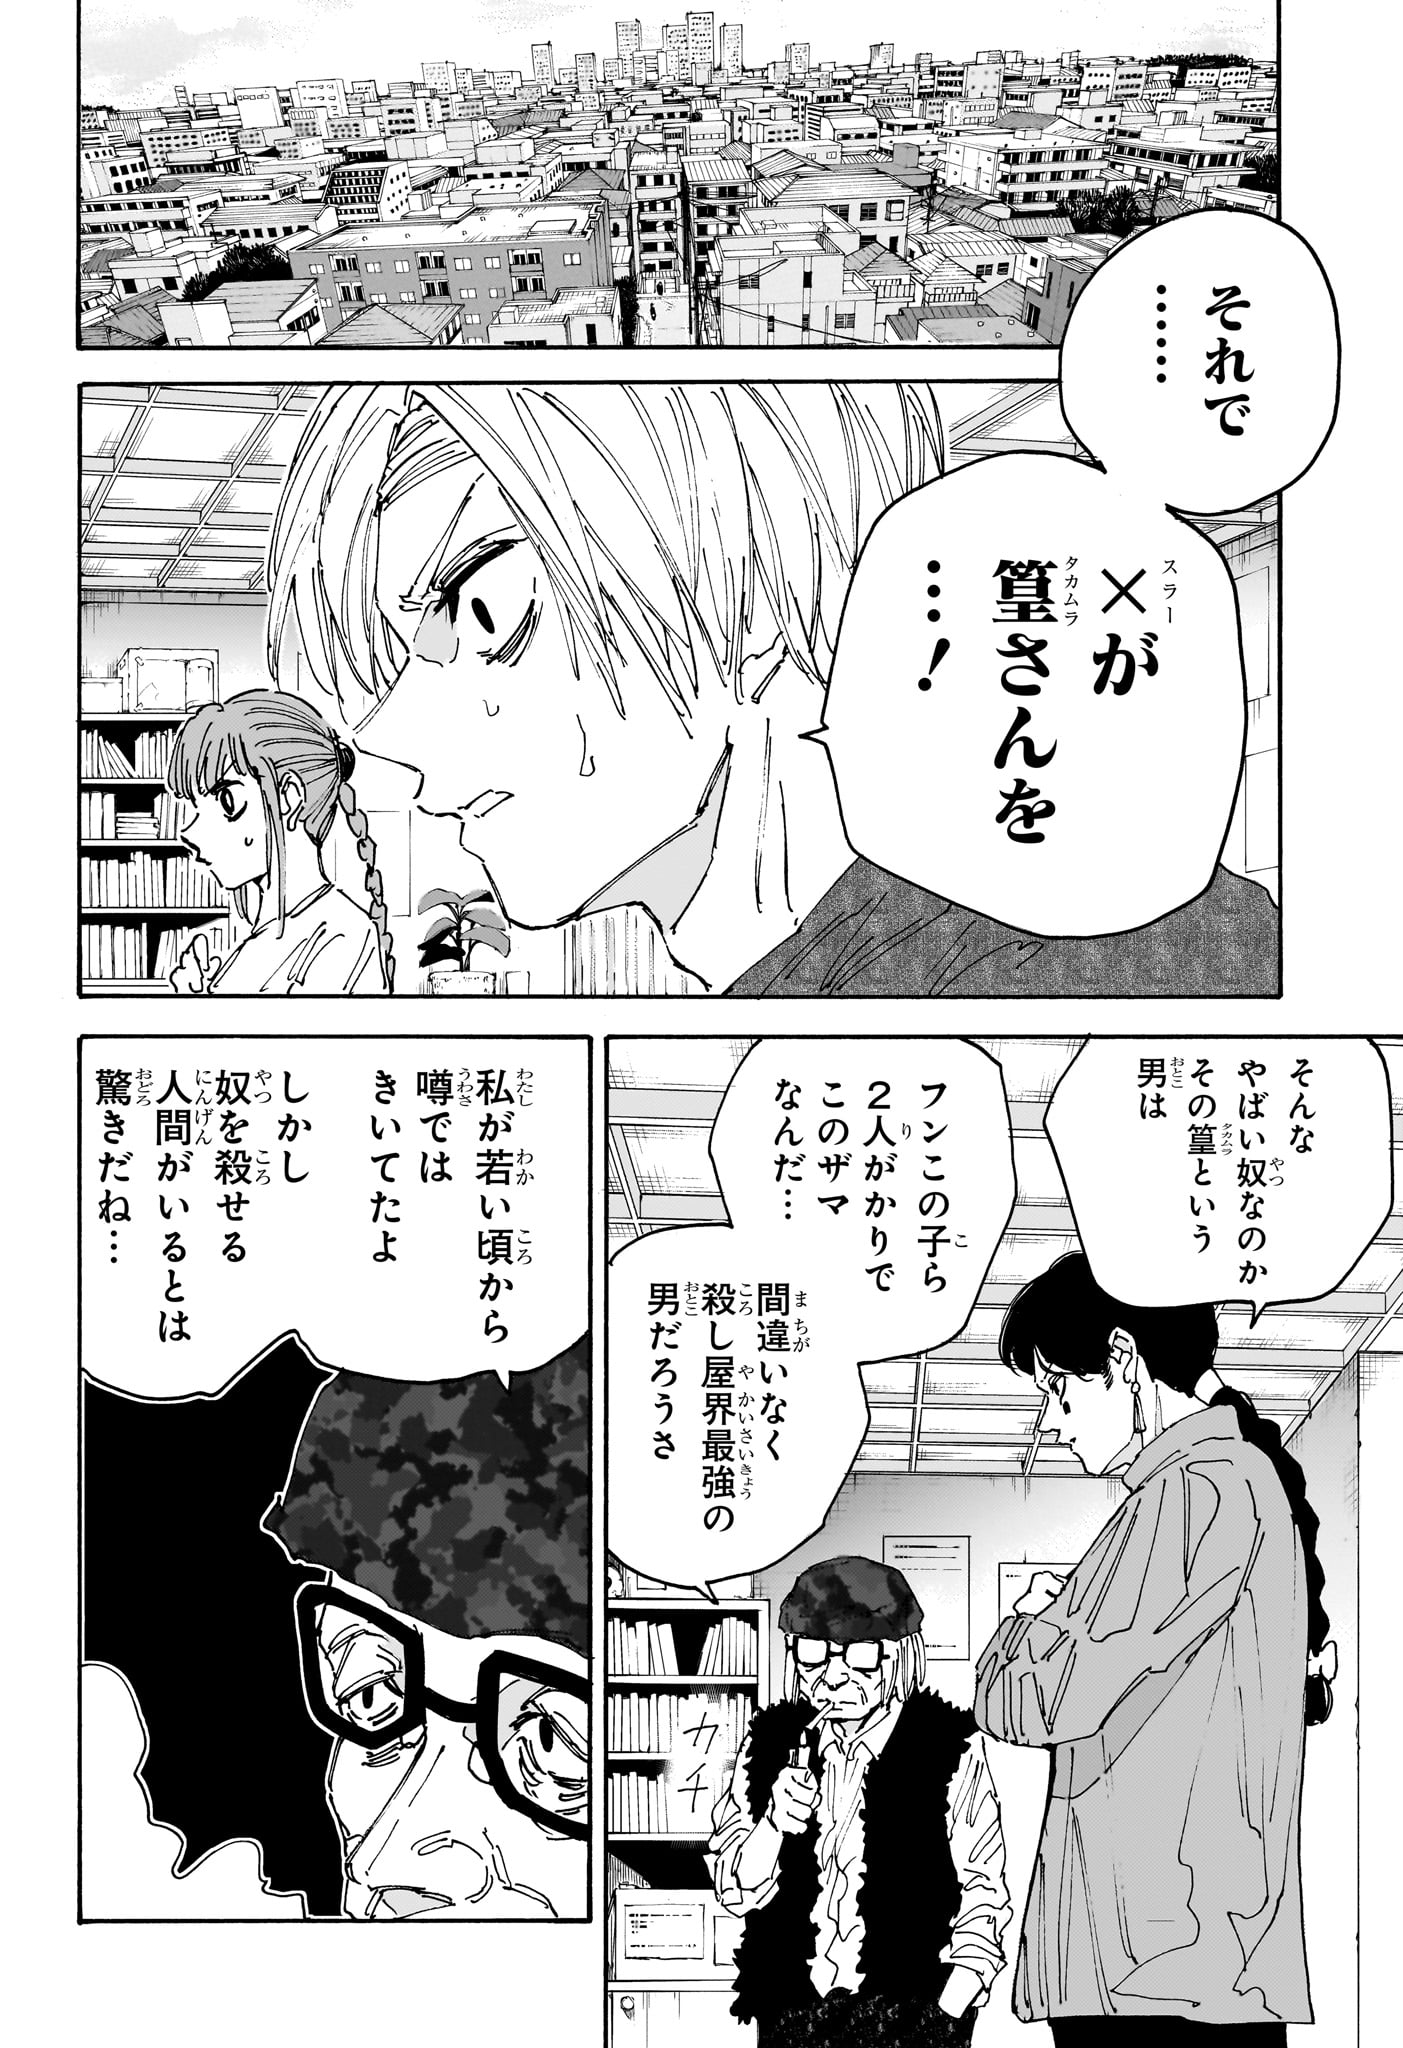 Sakamoto Days - Chapter 168 - Page 14